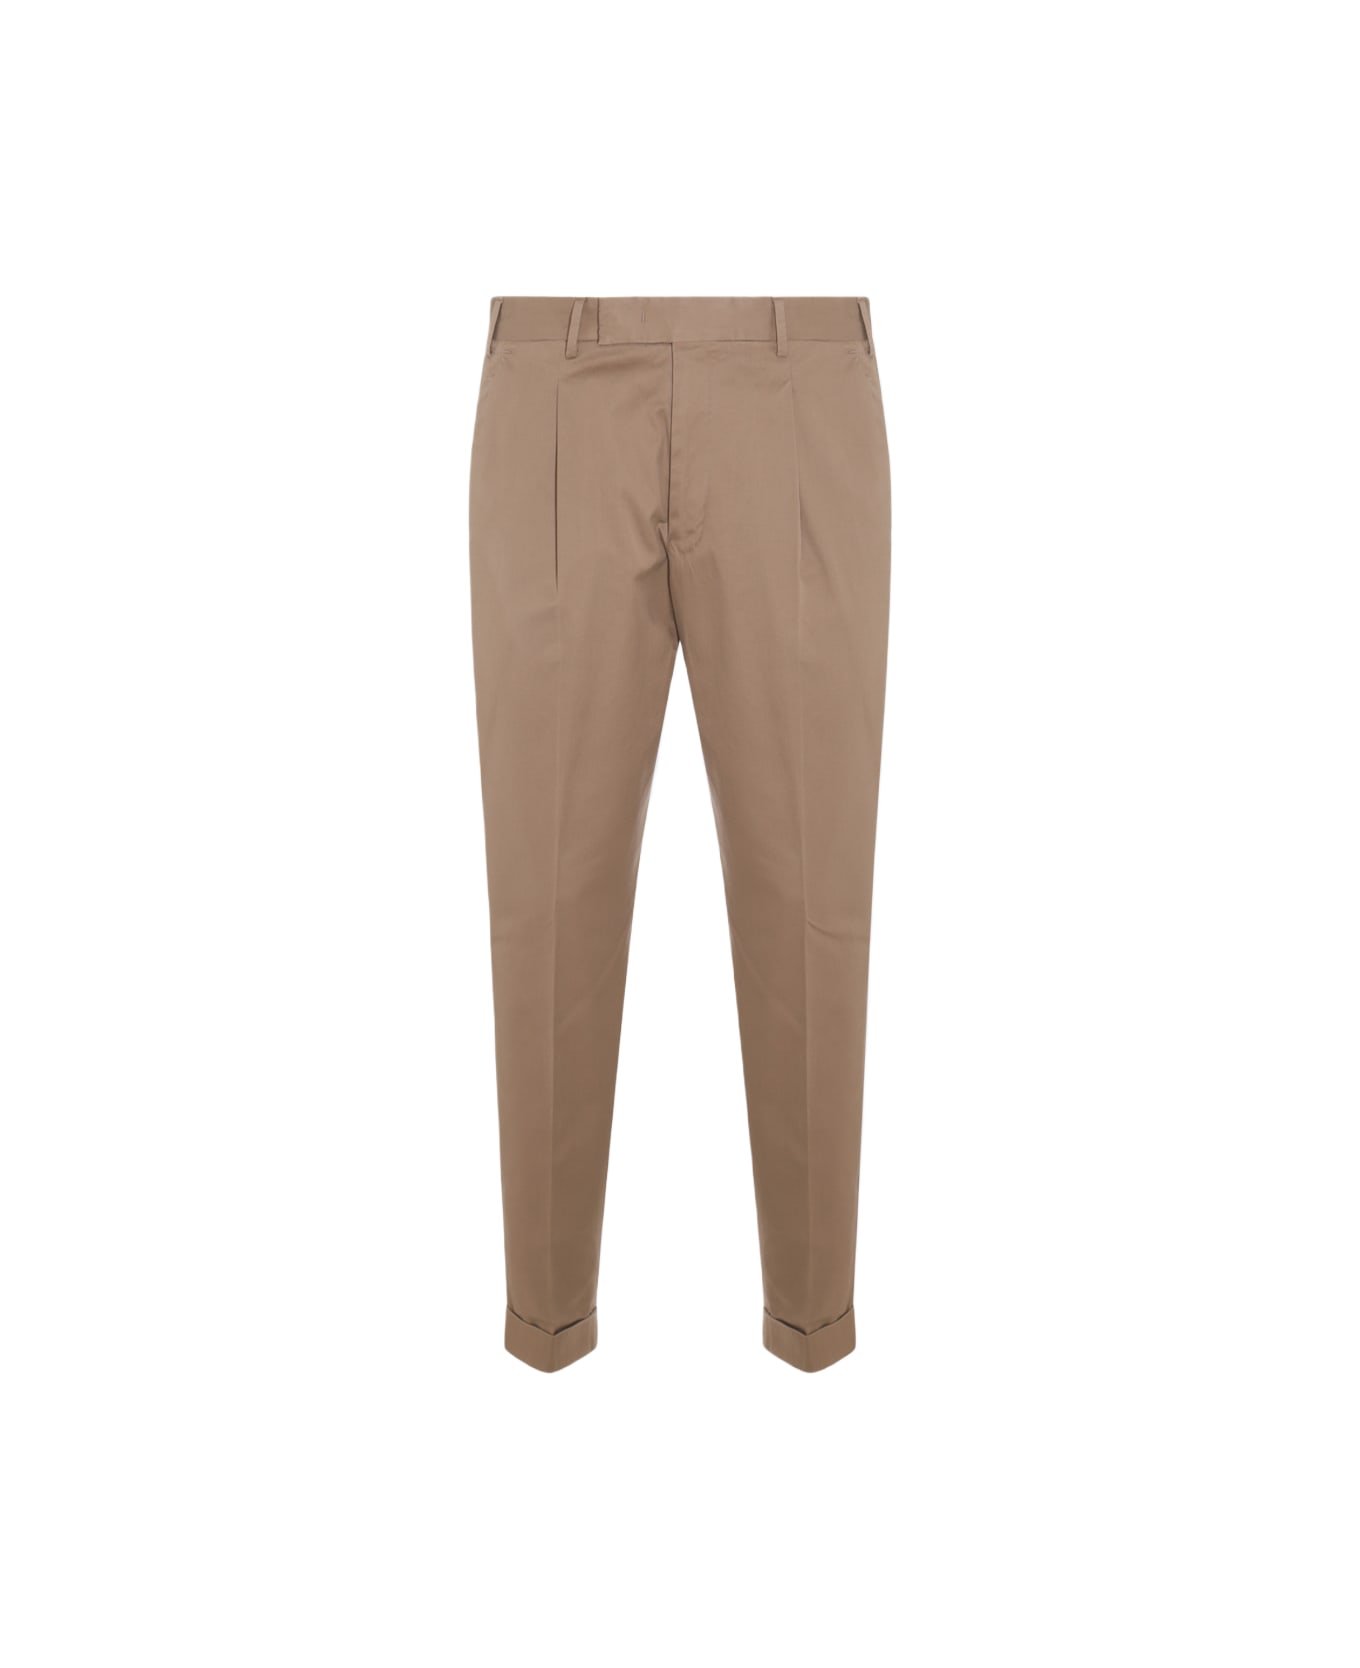 PT01 Beige Cotton Pants - Coloniale